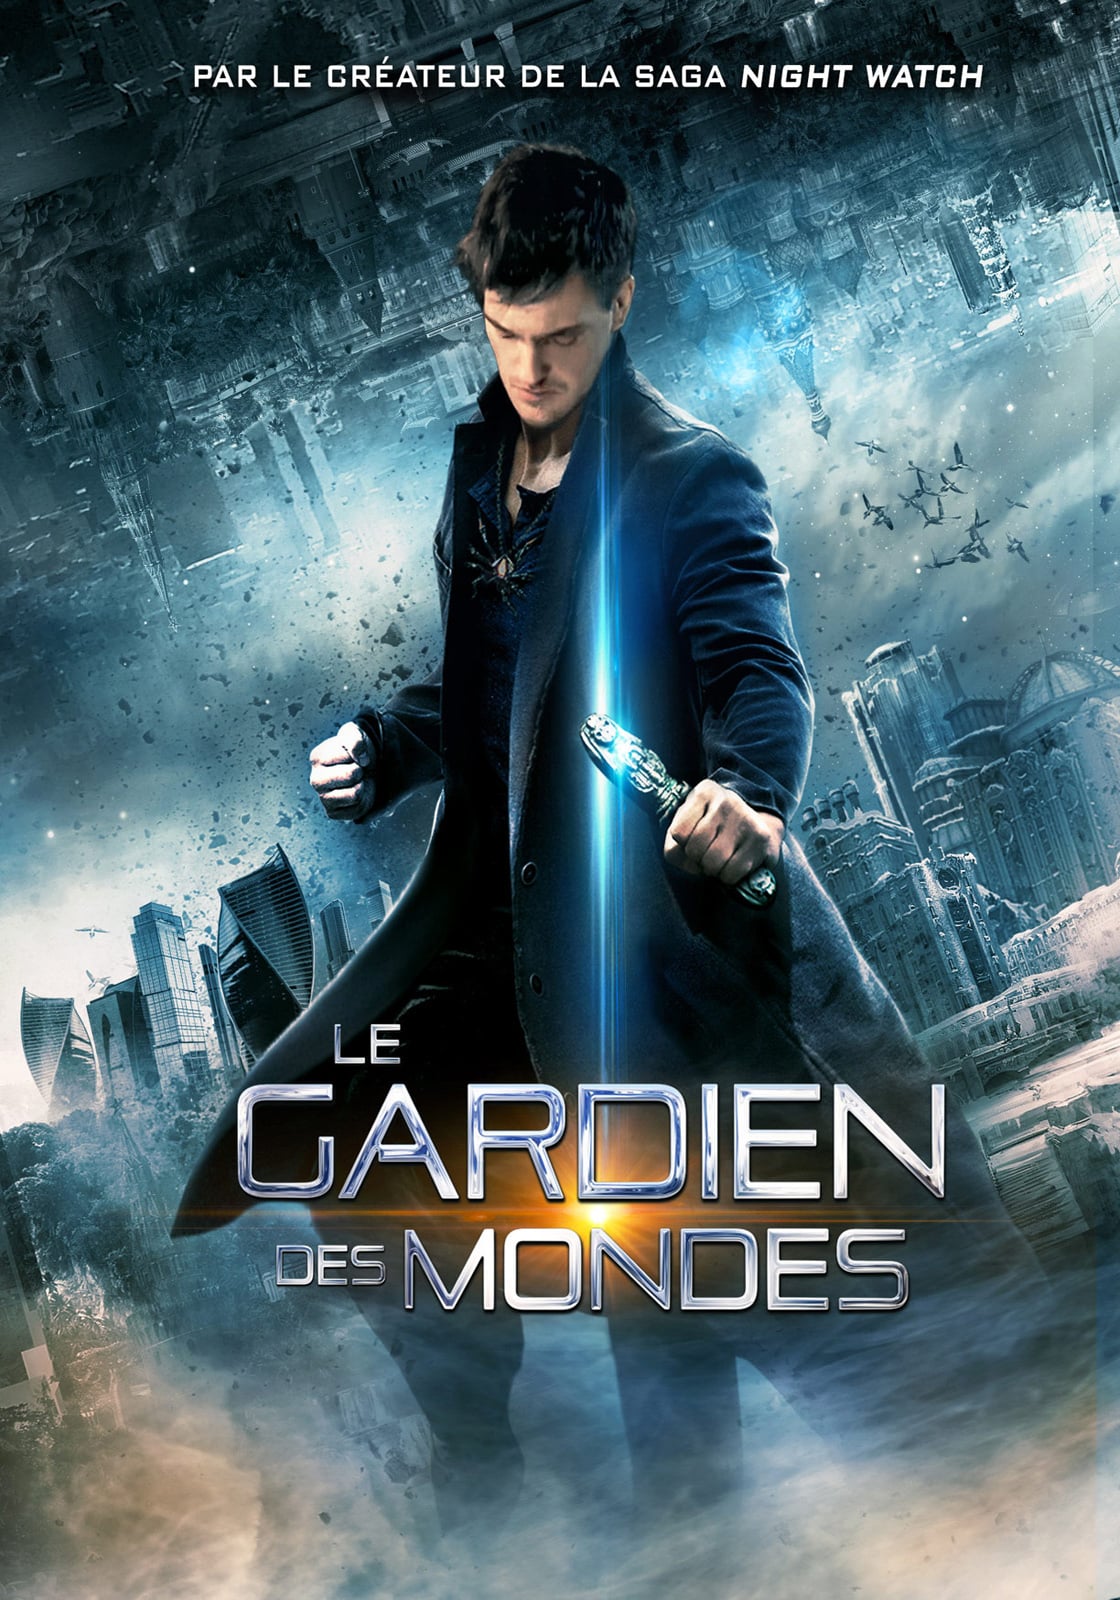 Affiche du film "Le Gardien des mondes"